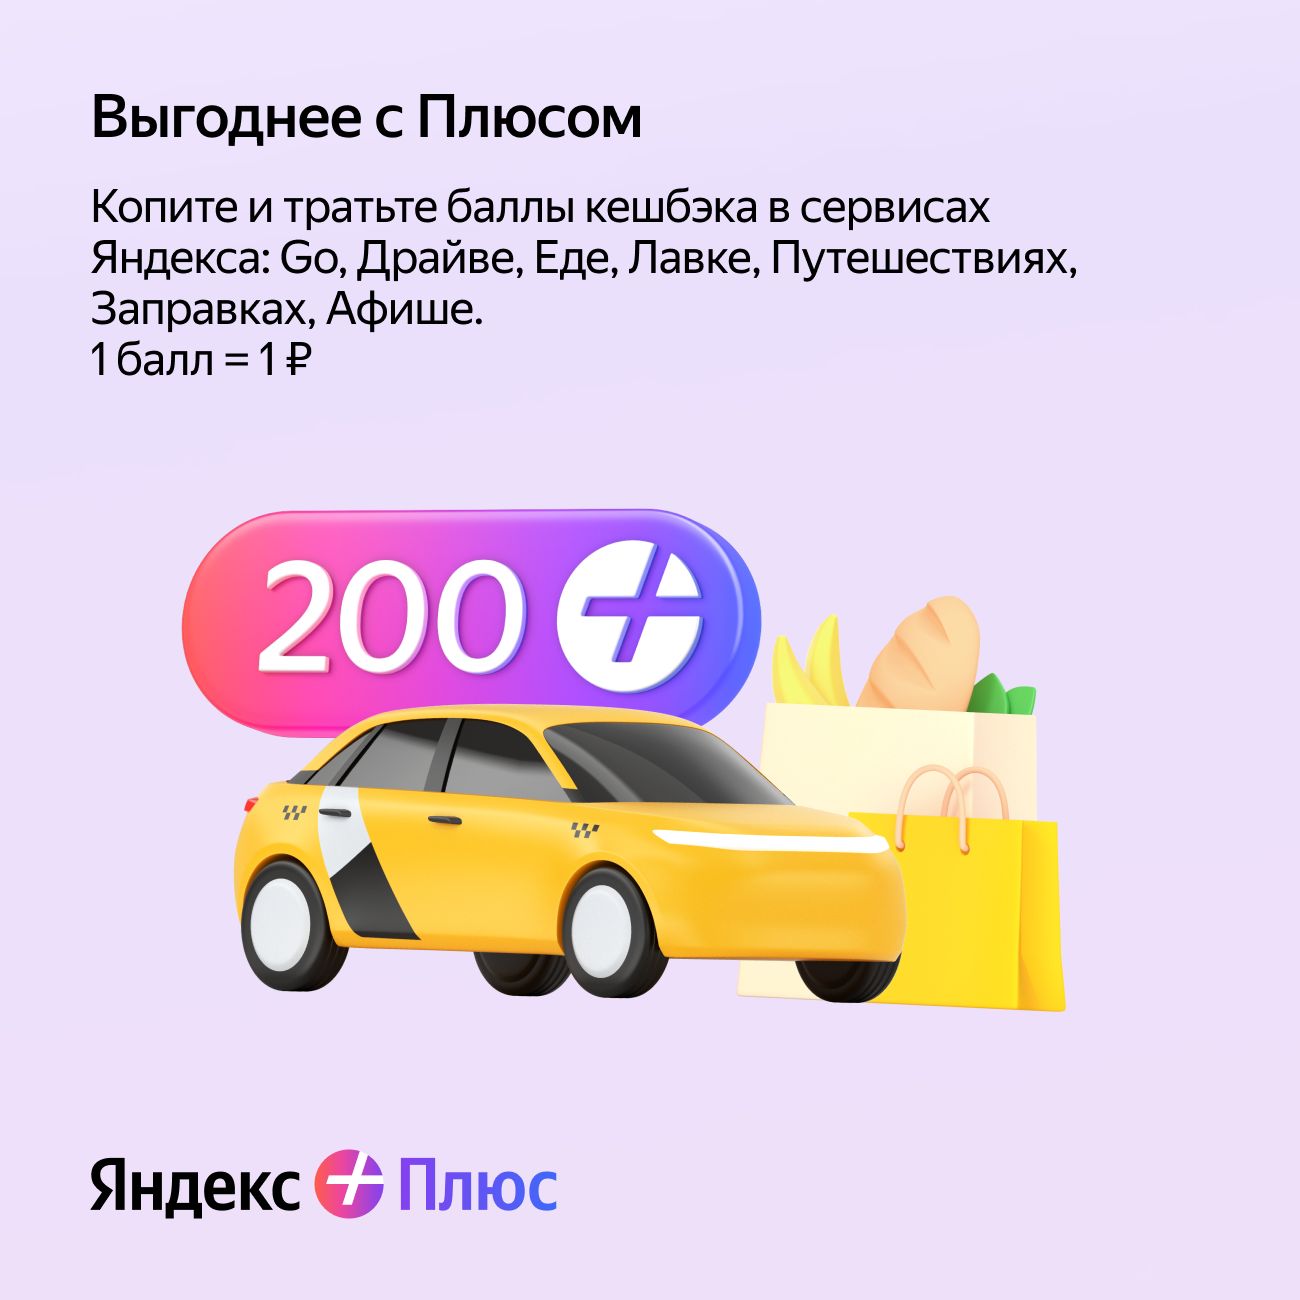 🔥 Yandex Plus Mult subscription - for 30 months 🔥💳0%